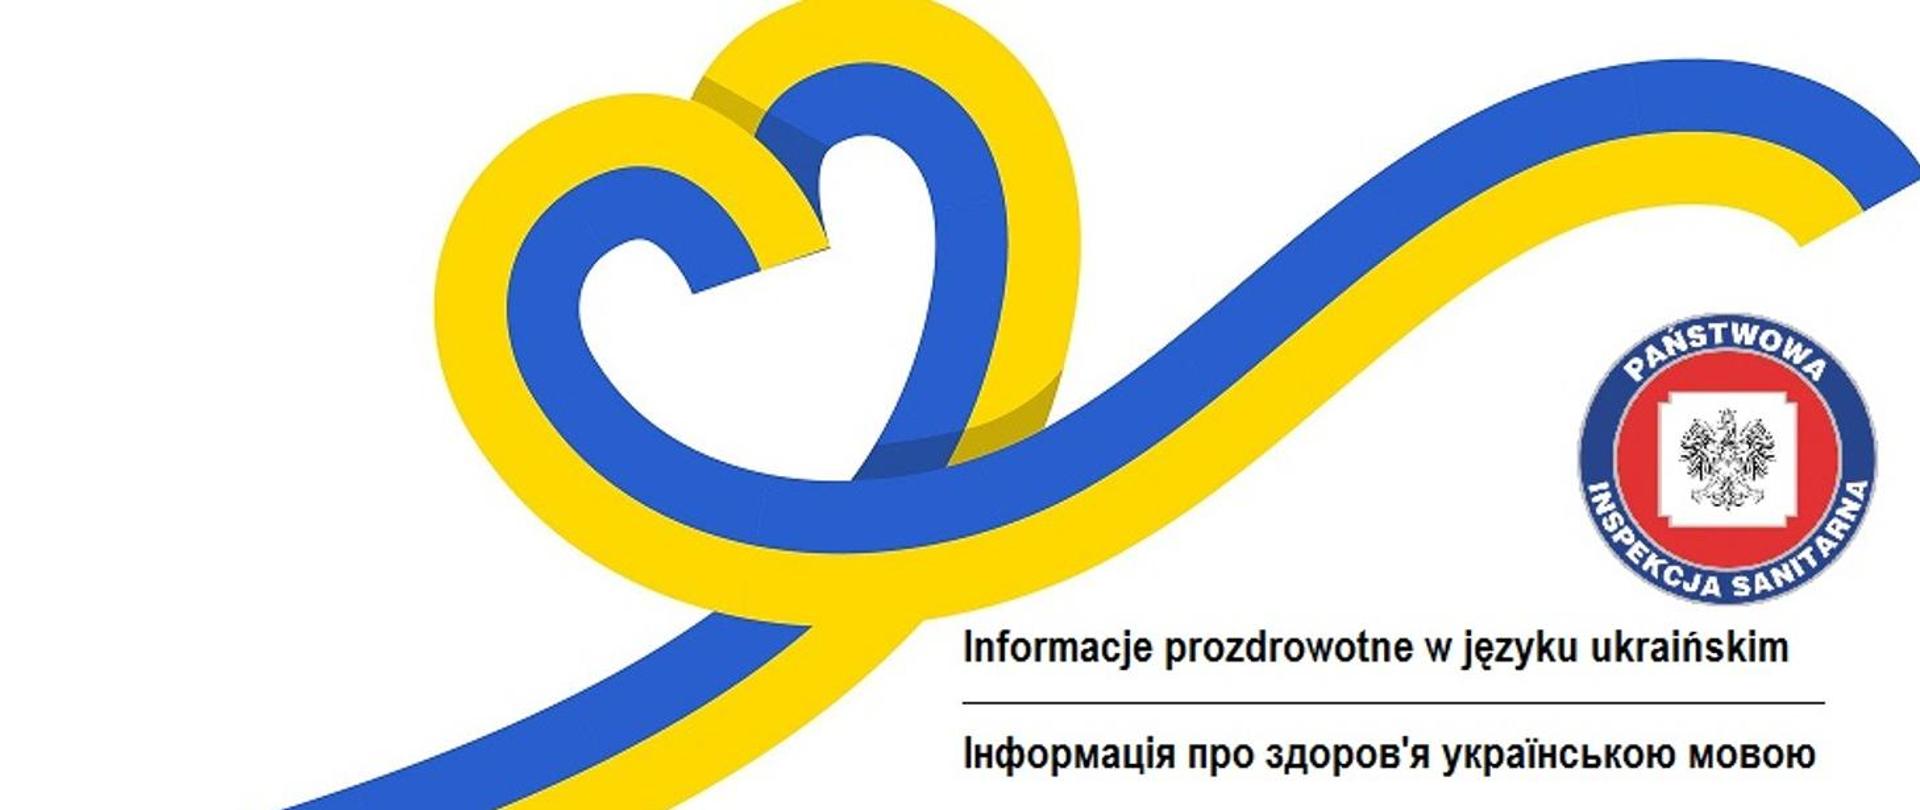 Informacje prozdrowotne w języku ukraińskim